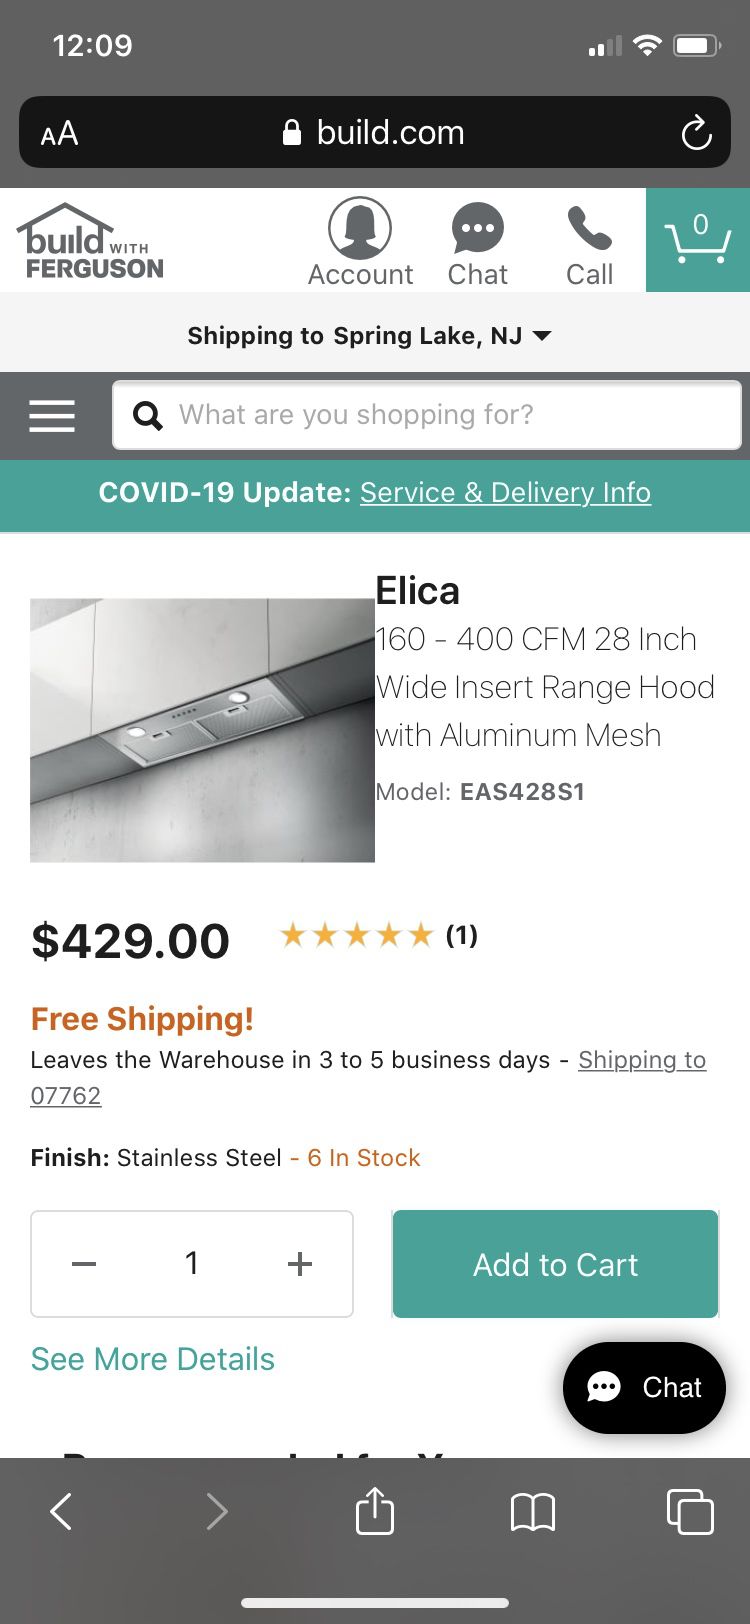 Elica 28” Kitchen Hood